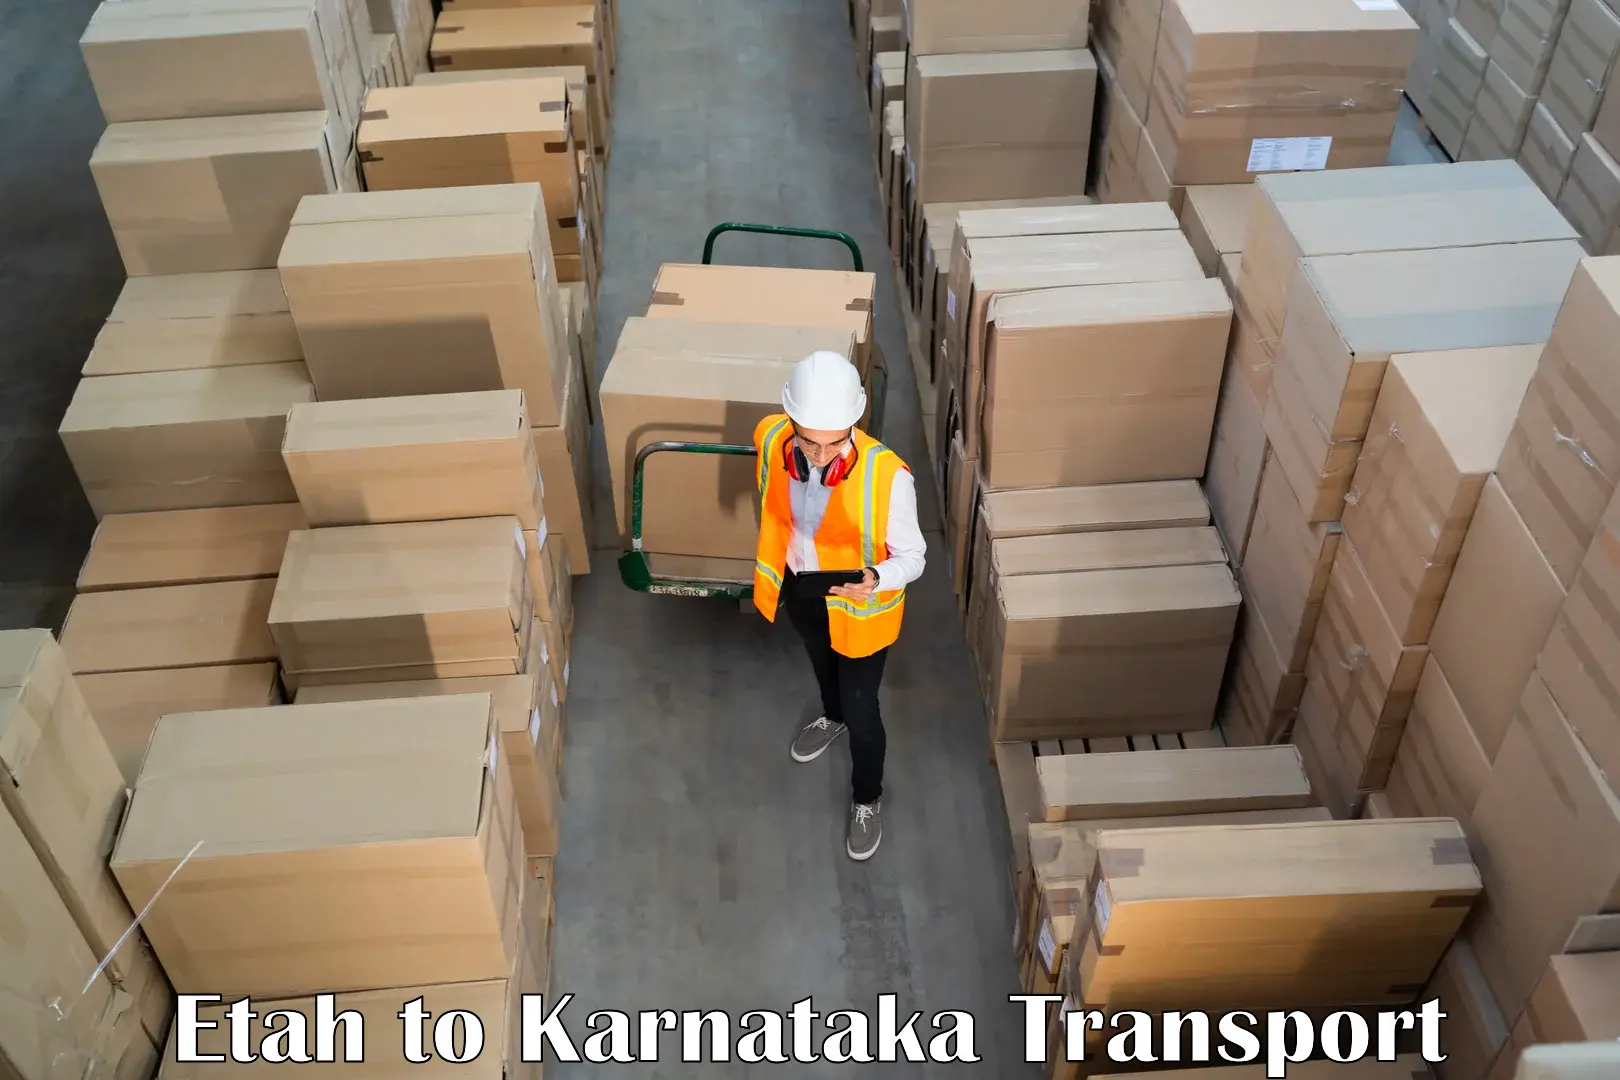 Vehicle transport services Etah to Karnataka